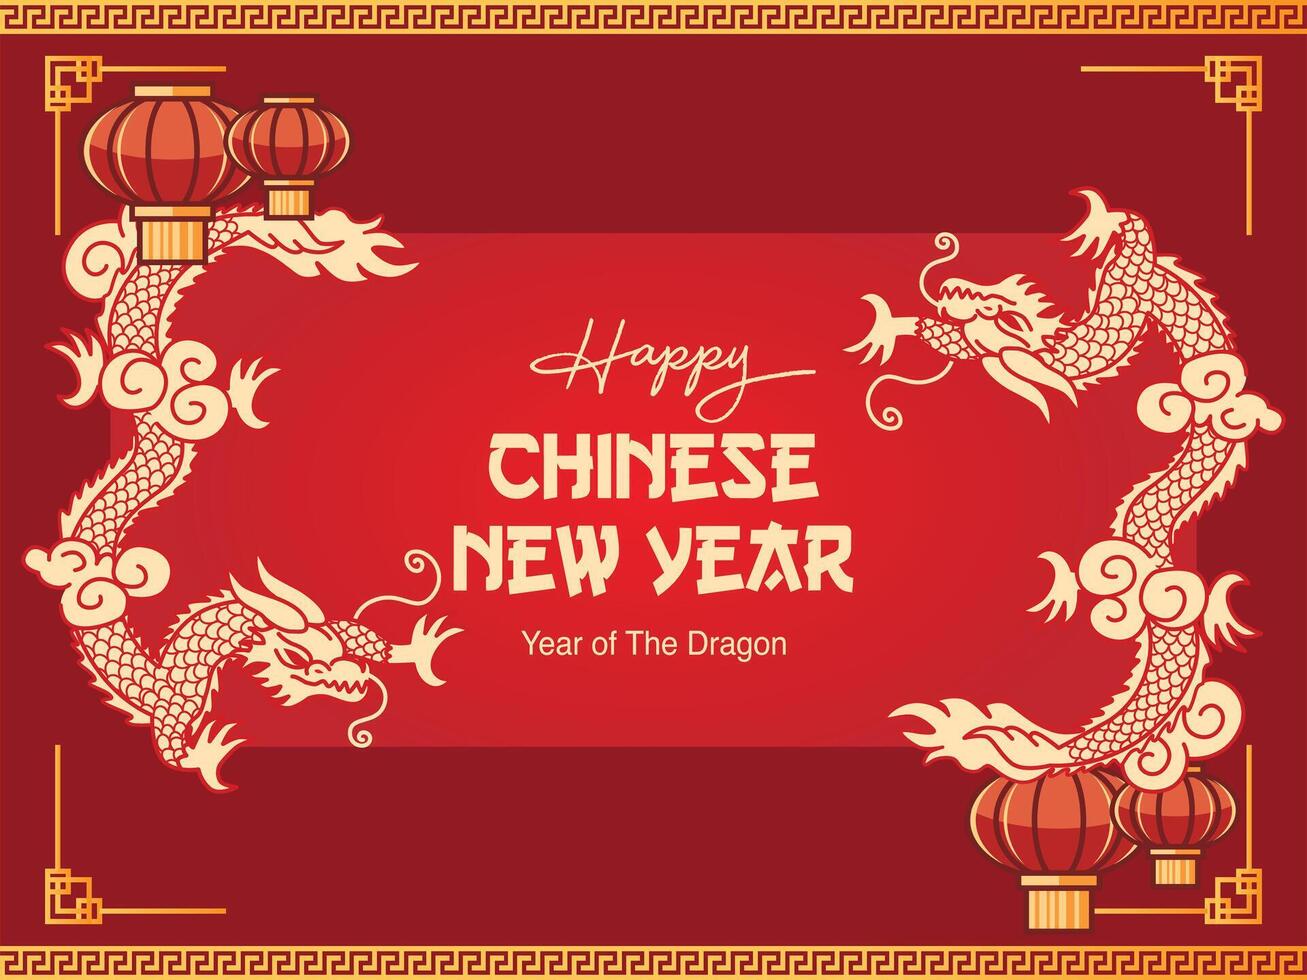 Drago anno Cinese nuovo anno vettore